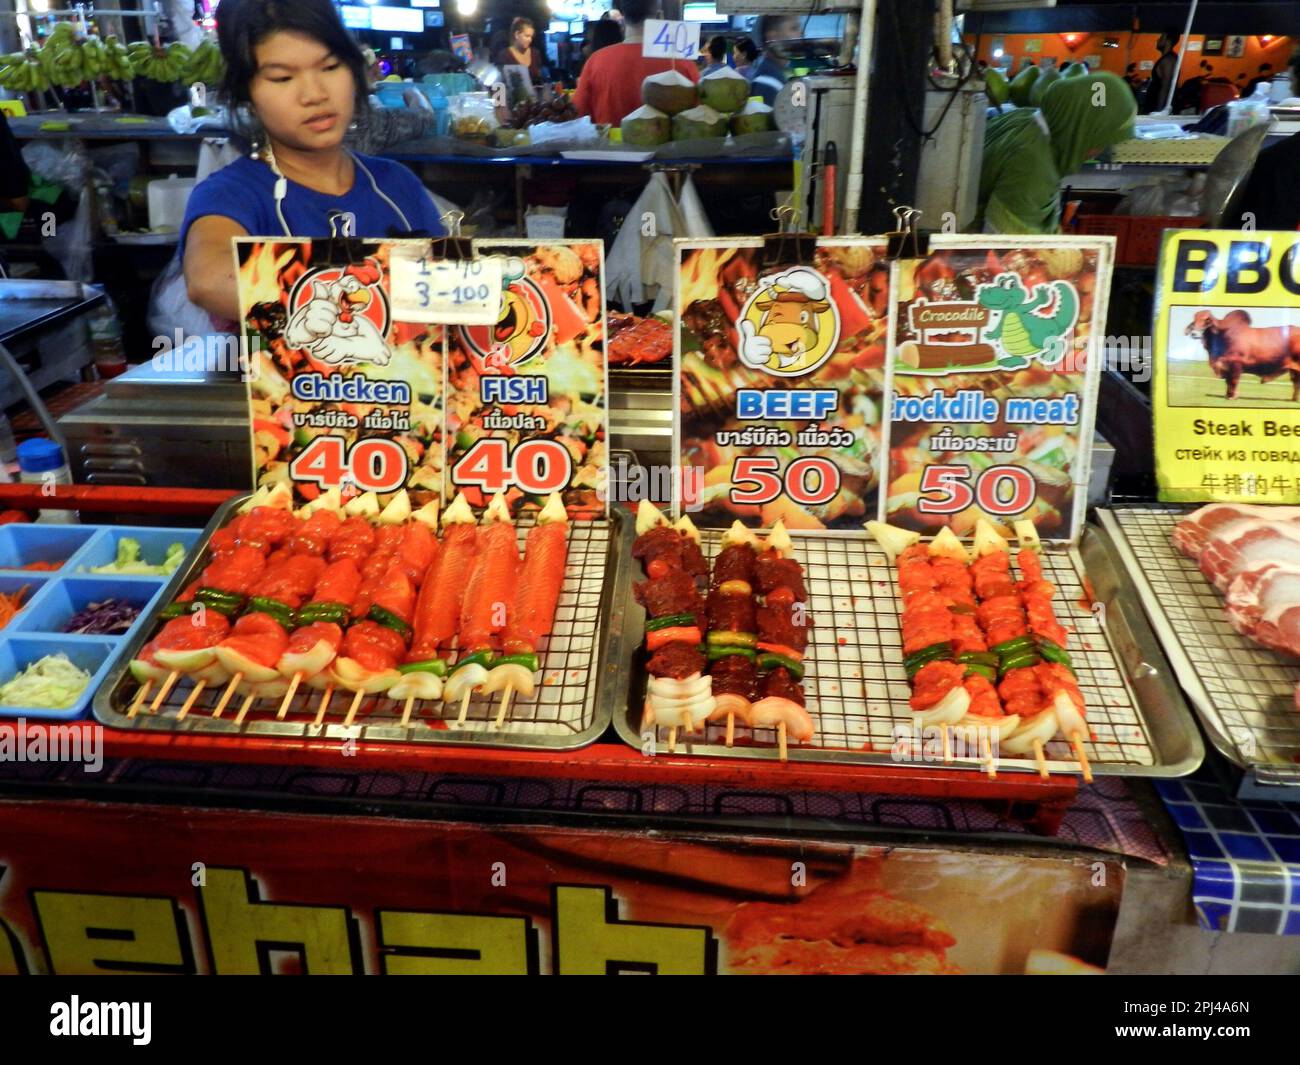 Thaïlande, île de Phuket, Patong Beach: Le marché de nuit offre une large gamme de nourriture et d'en-cas, y compris le poulet, le poisson, le boeuf et la viande de crocodile gril Banque D'Images